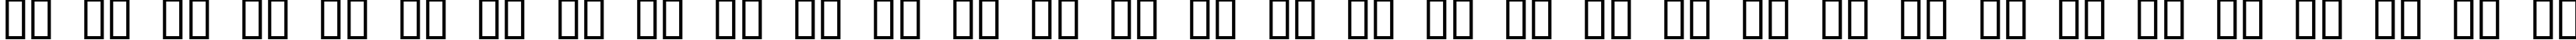 Пример написания русского алфавита шрифтом Bonk Offset